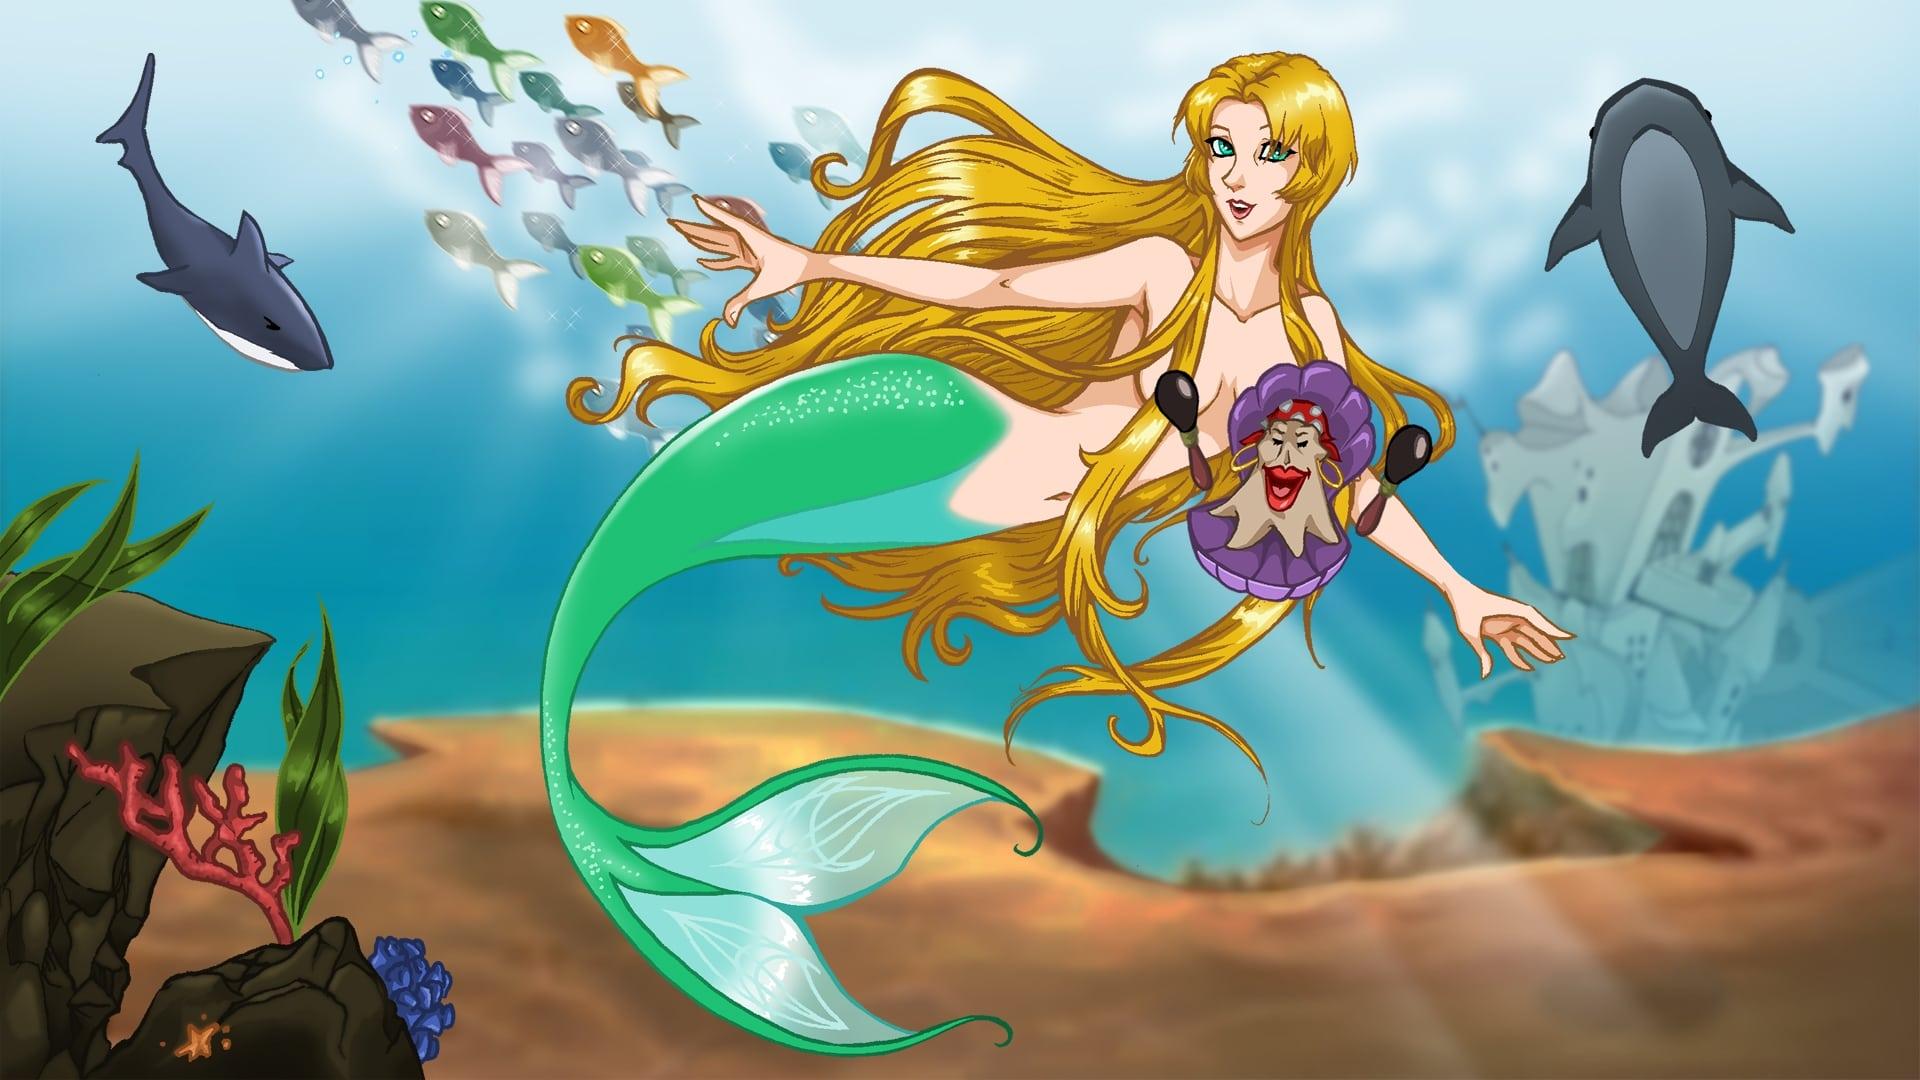 The Lesbian Little Mermaid backdrop